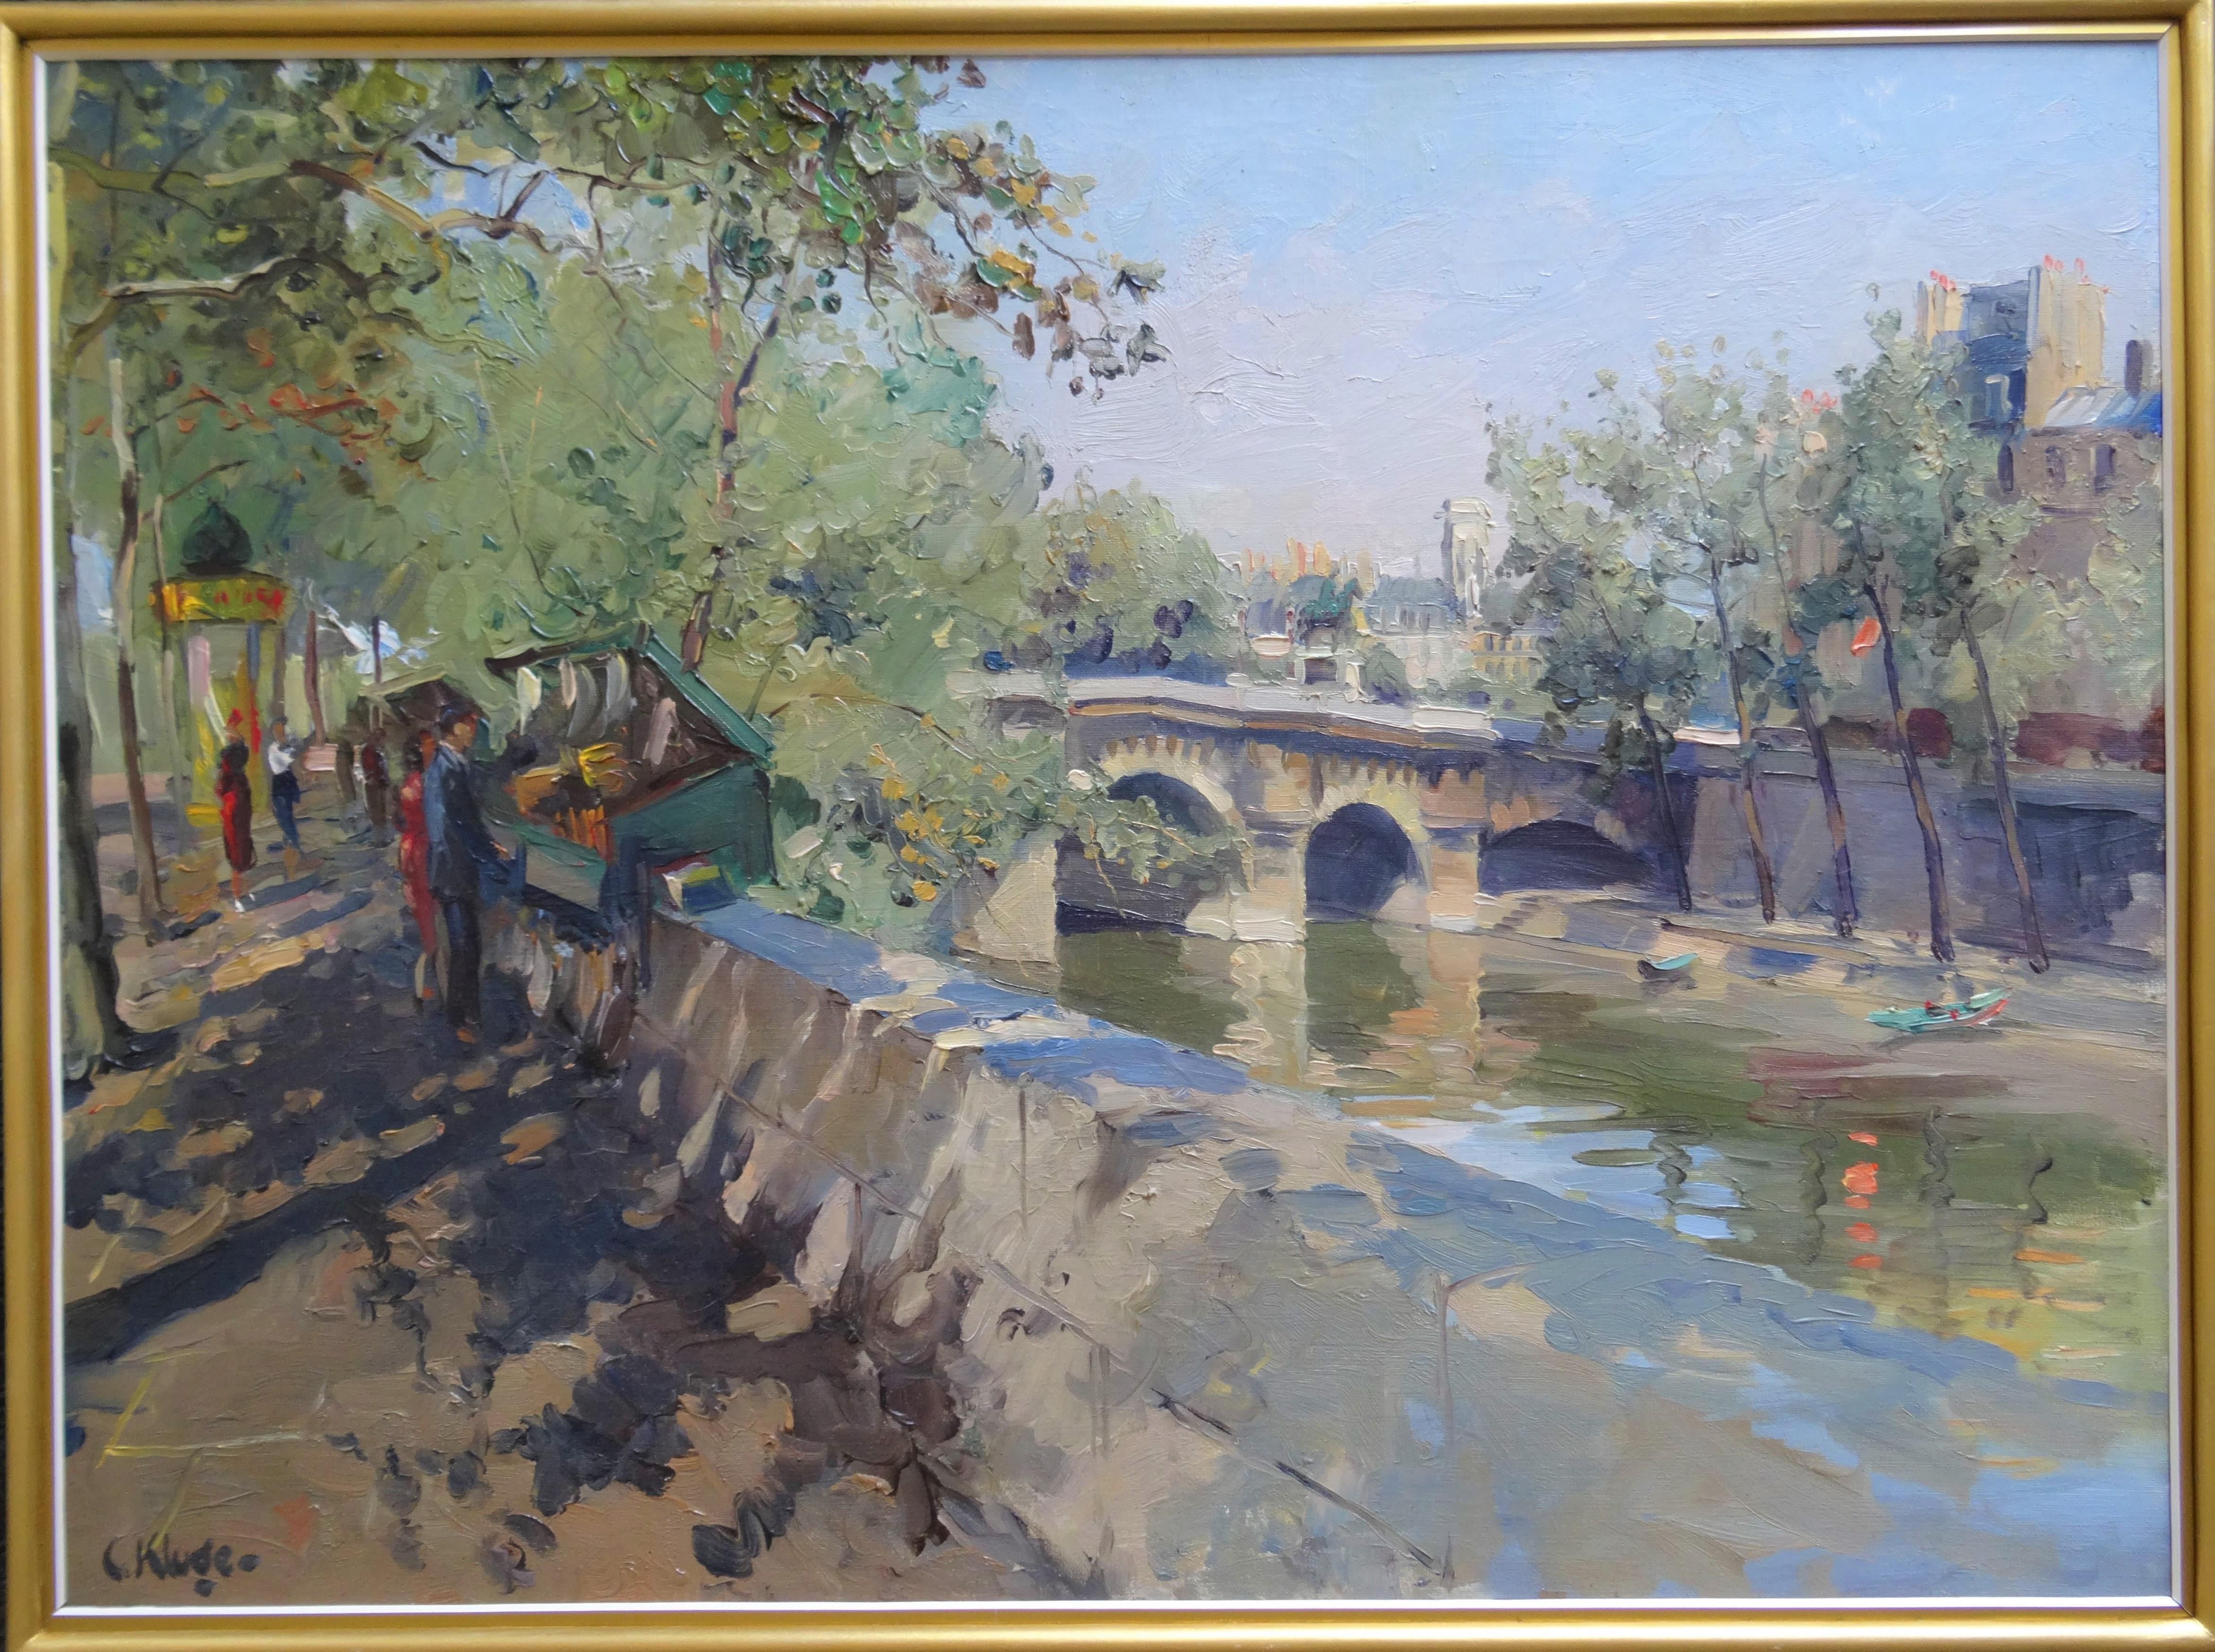 Constantin Kluge est un peintre français d'origine russe, surtout connu pour ses scènes naturalistes de Paris et de la campagne française. Kluge est né d'une riche famille de militaires le 29 janvier 1912 à Riga, en Lettonie, qui était alors une